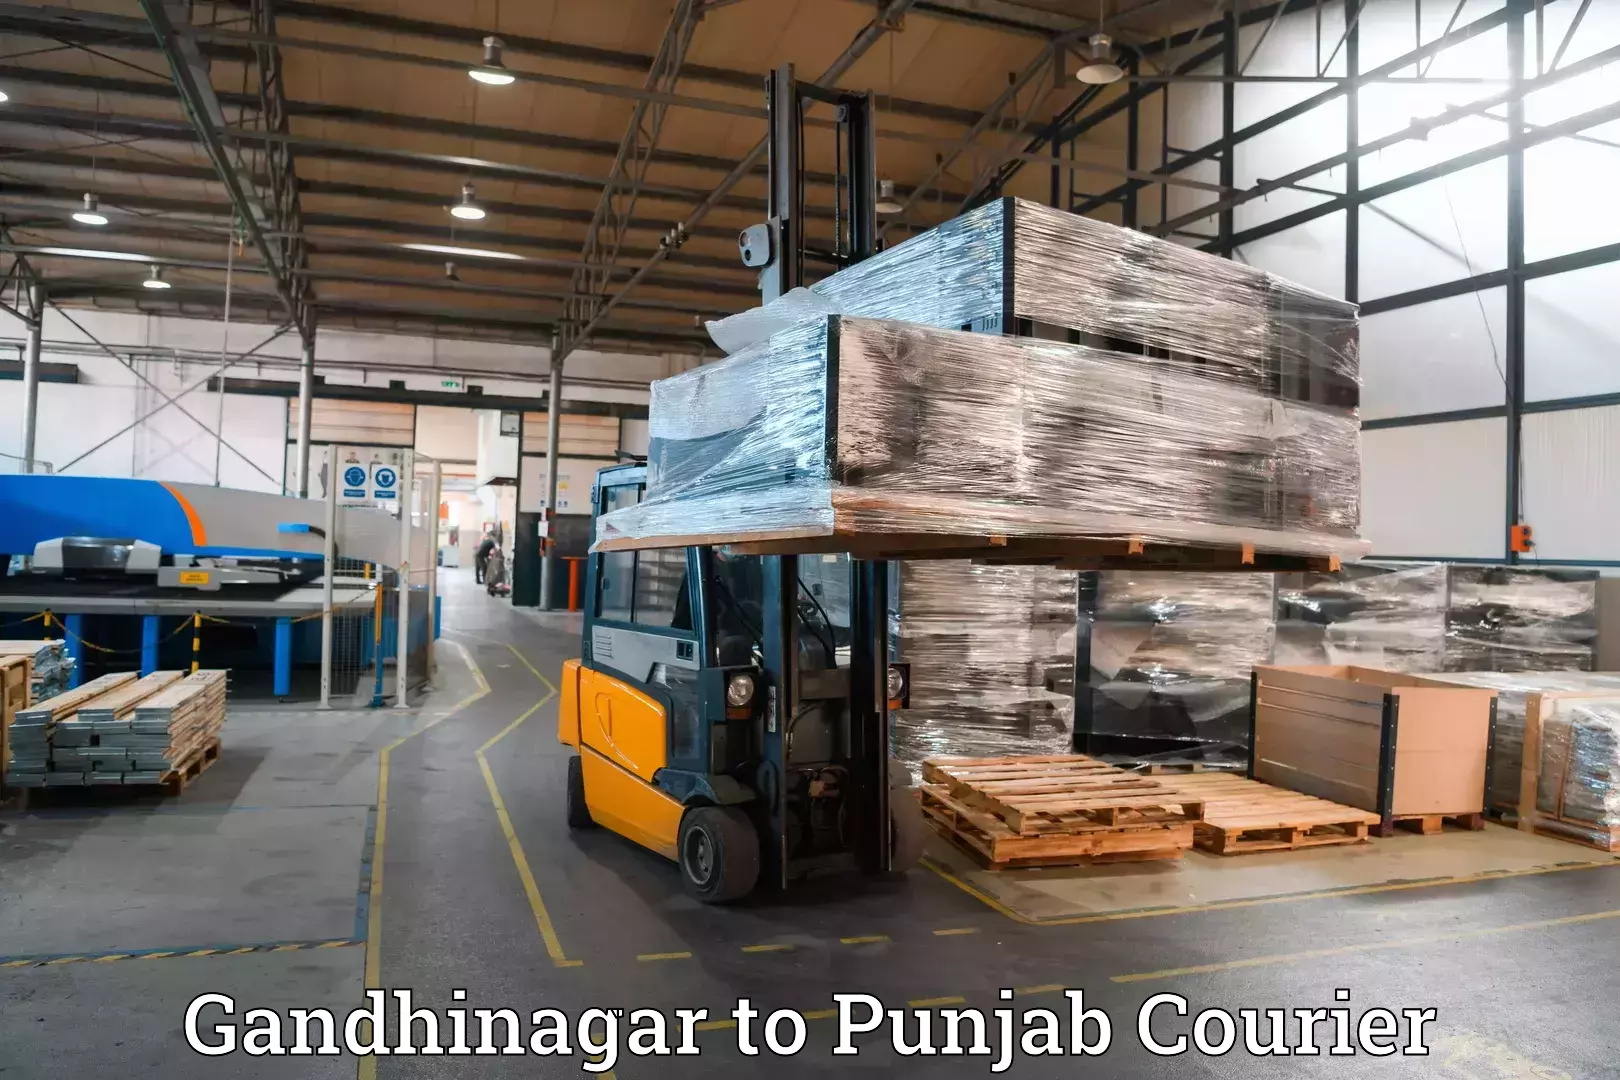 Baggage transport updates in Gandhinagar to Punjab